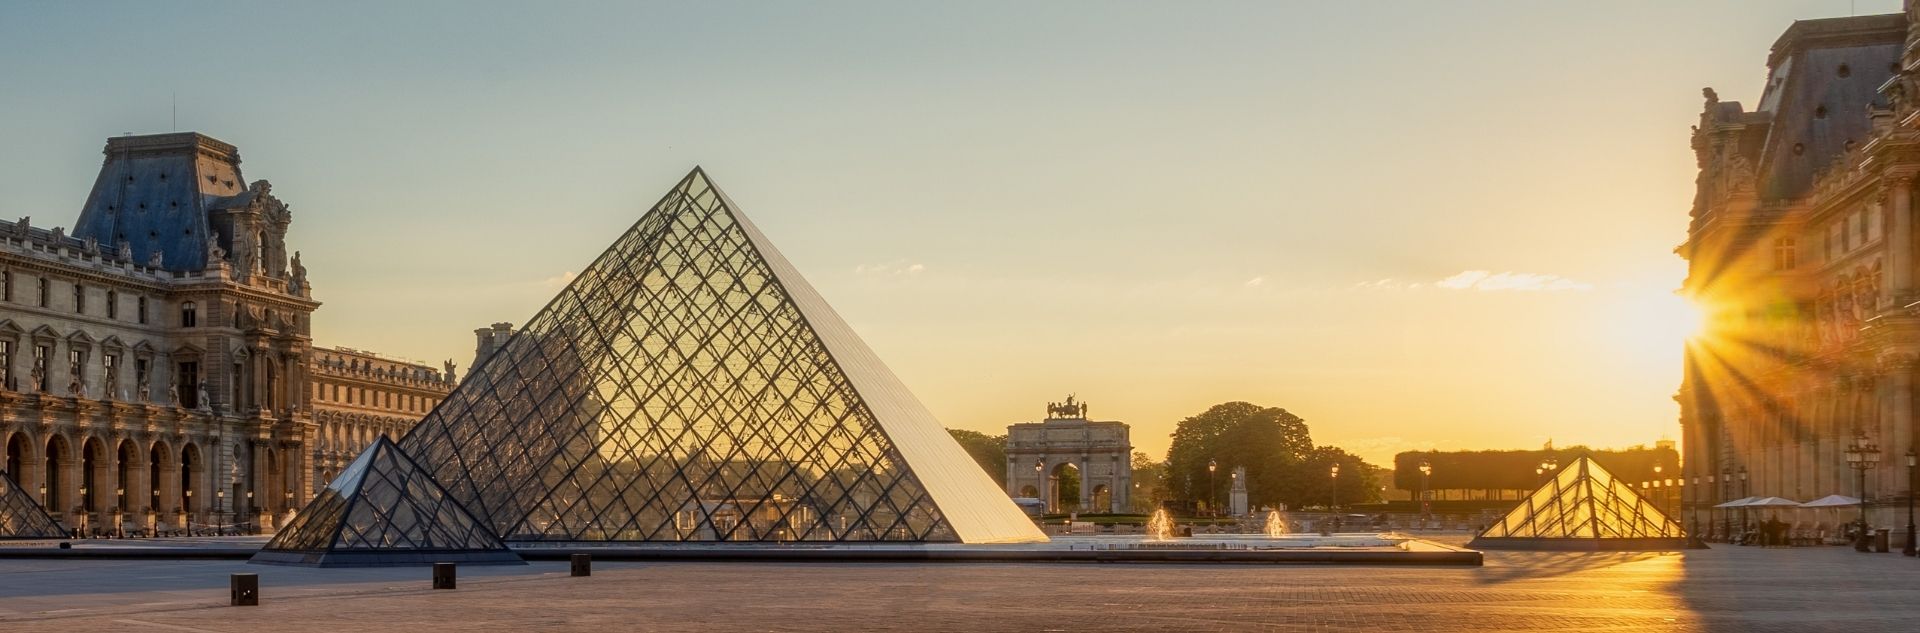 Frankreich - Paris, Louvre